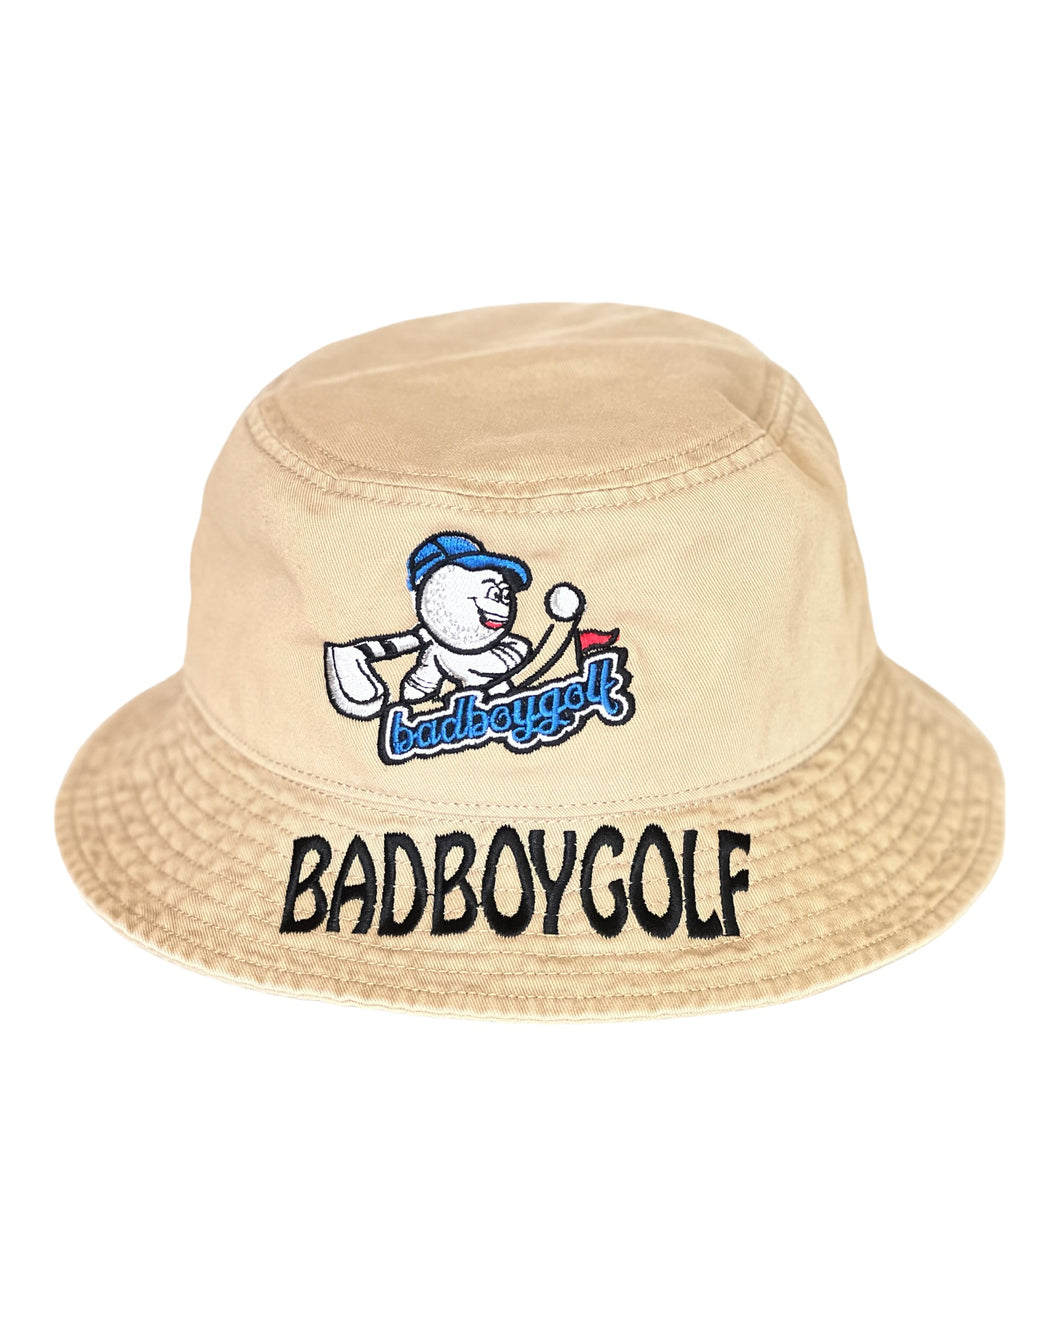 BADBOYGOLF Bucket Hat Tan